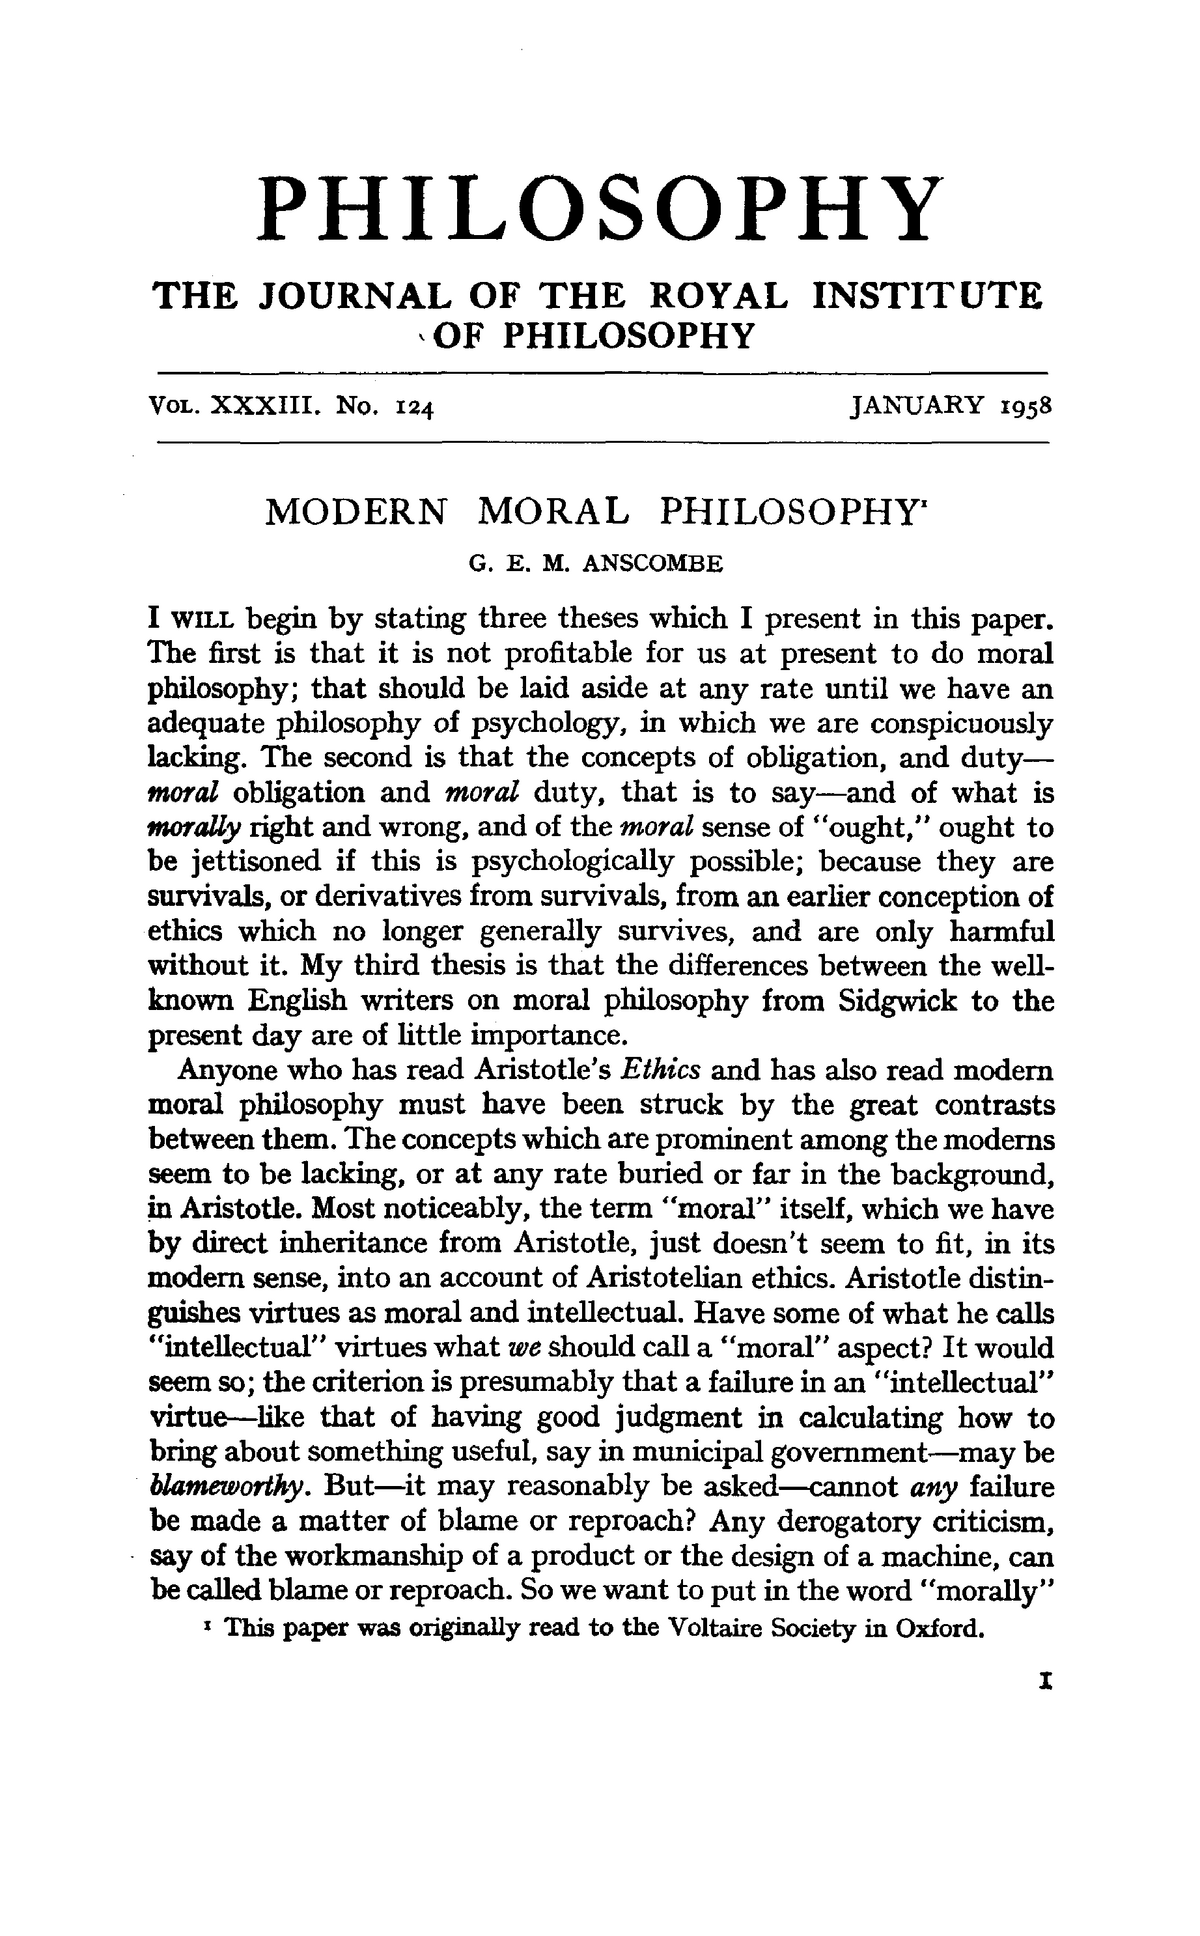 moral philosophy essay titles